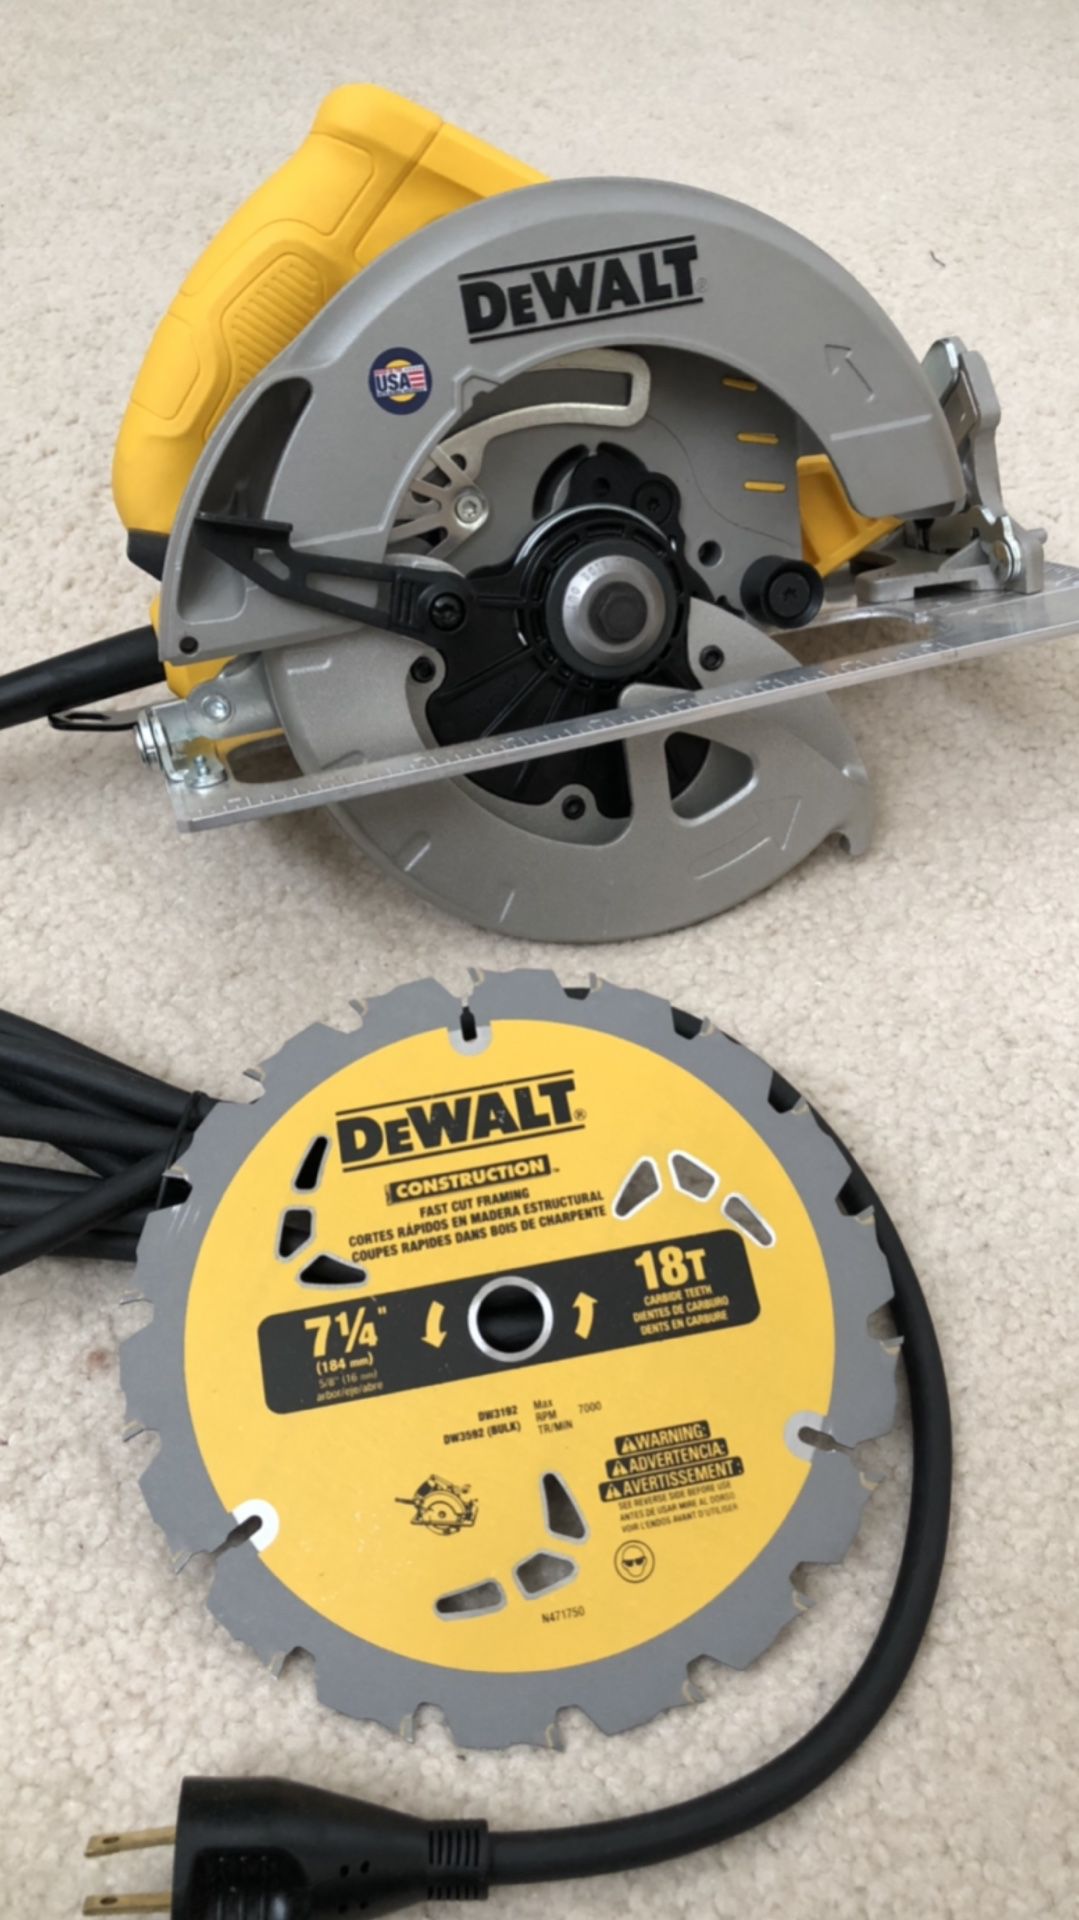 DeWalt 15 Amp 7-1/4 in. Lightweight Circular Saw